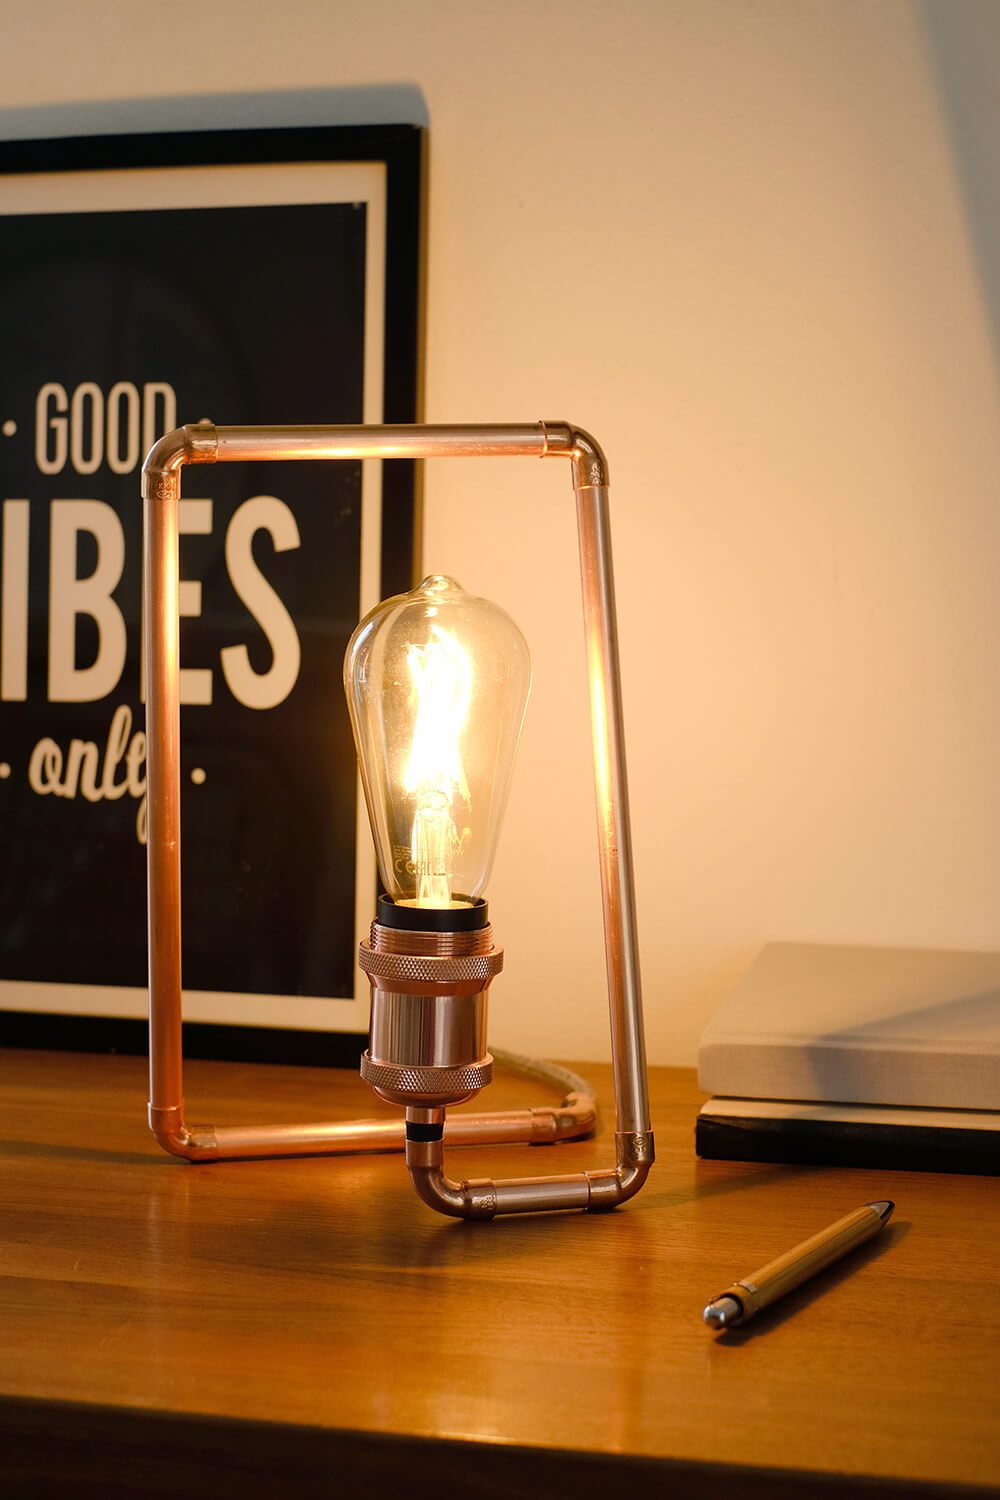 DIY Lampe aus Kupferrohren mit WIZ Filament als Vatertagsgeschenk - Gingered Things